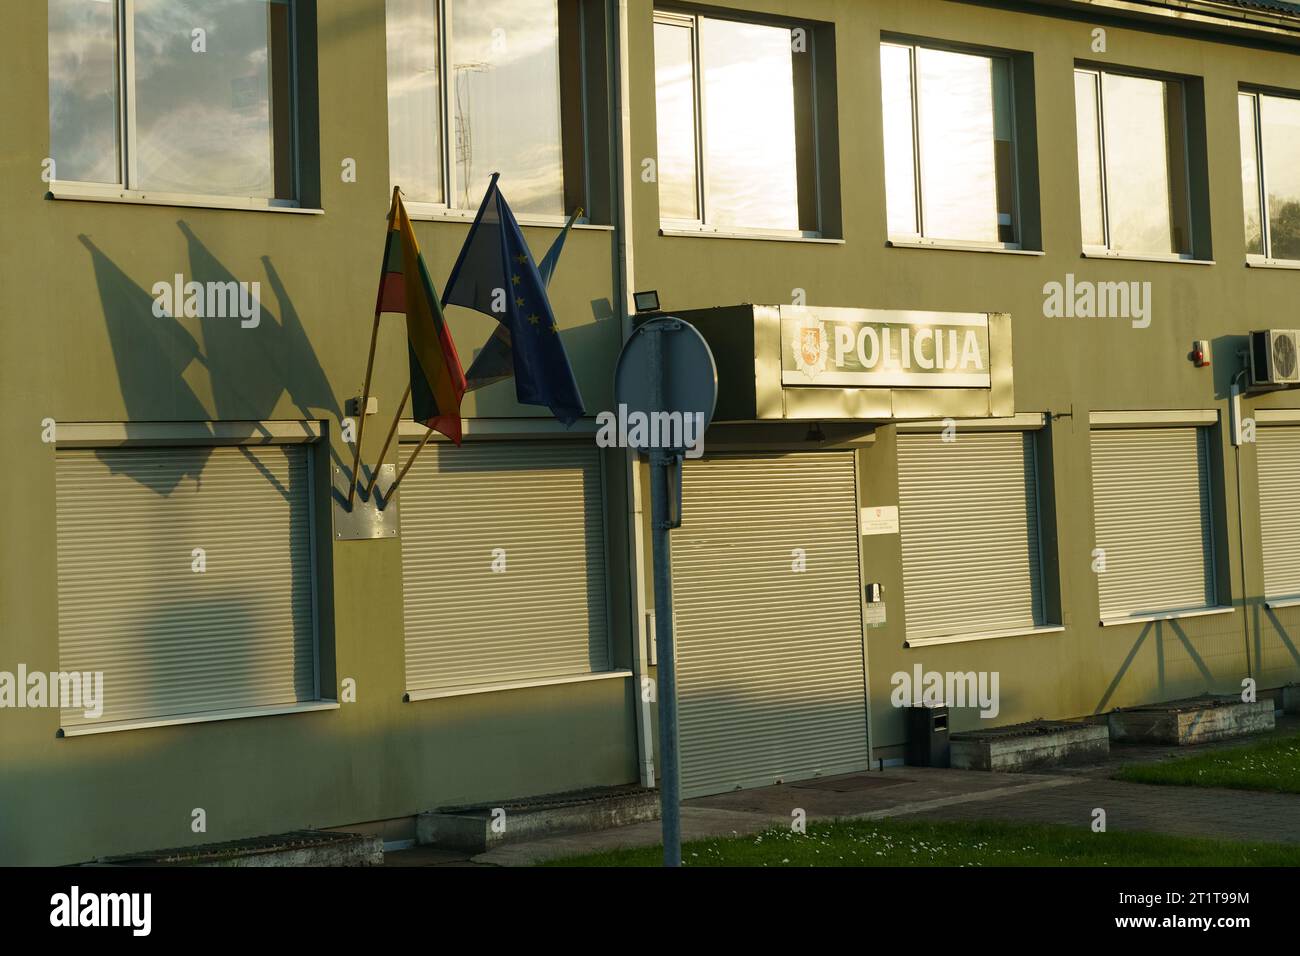 Le bâtiment du poste de police avec un panneau - la police et les drapeaux de la Lituanie et de l'Union européenne accrochés au bâtiment. Ressources administratives. Banque D'Images